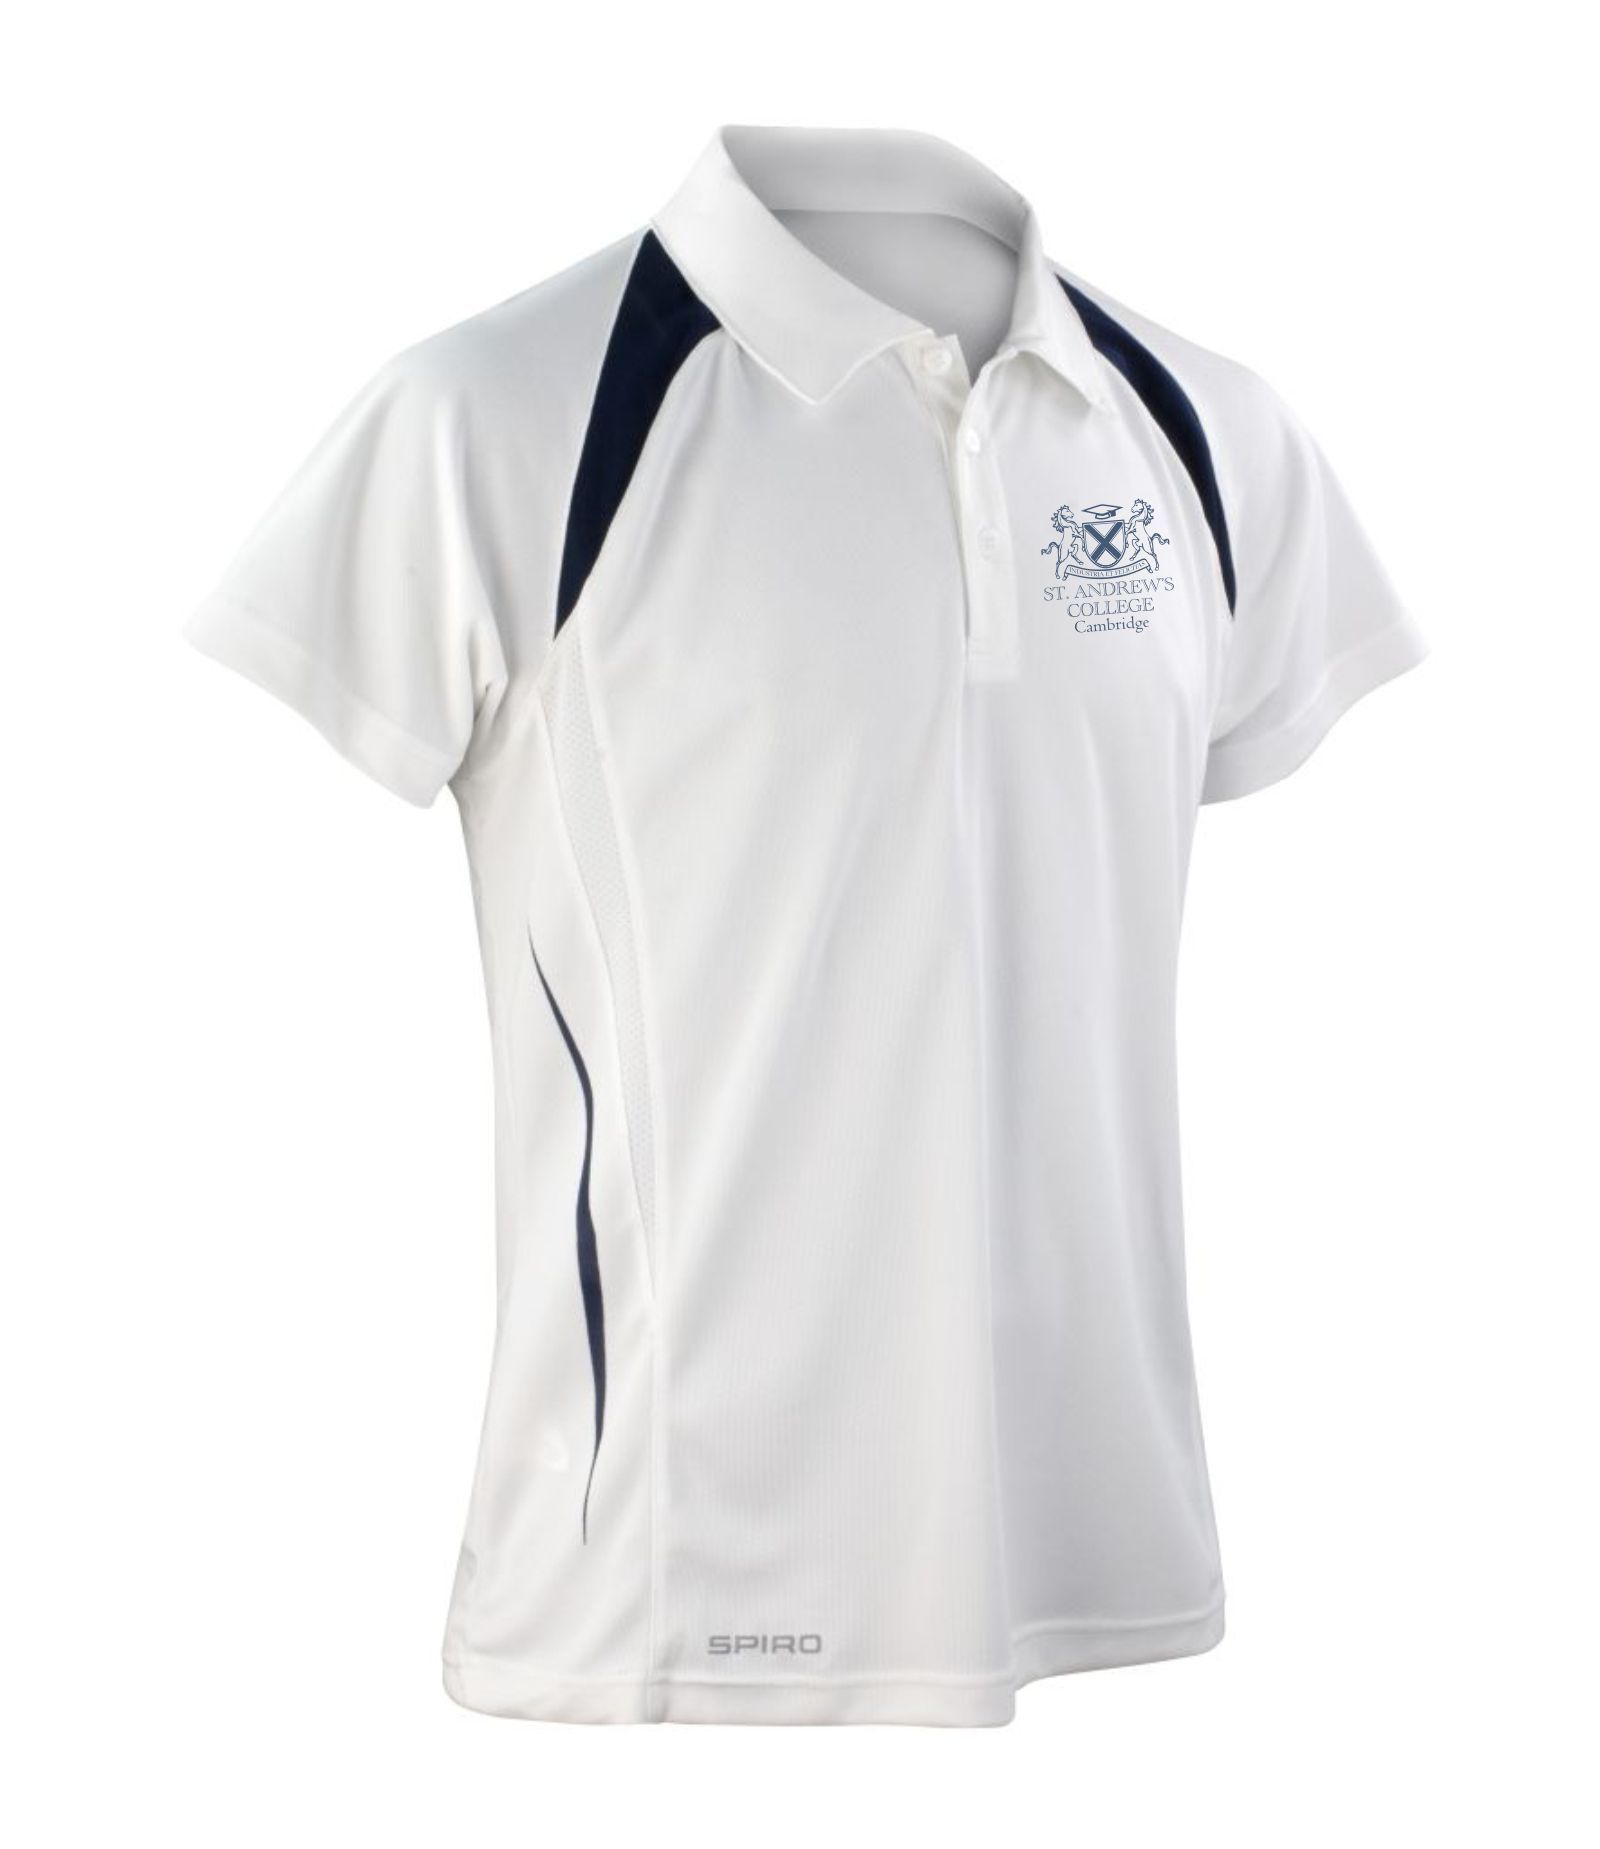 St Andrew's College Cambridge - Polo shirt (Unisex)